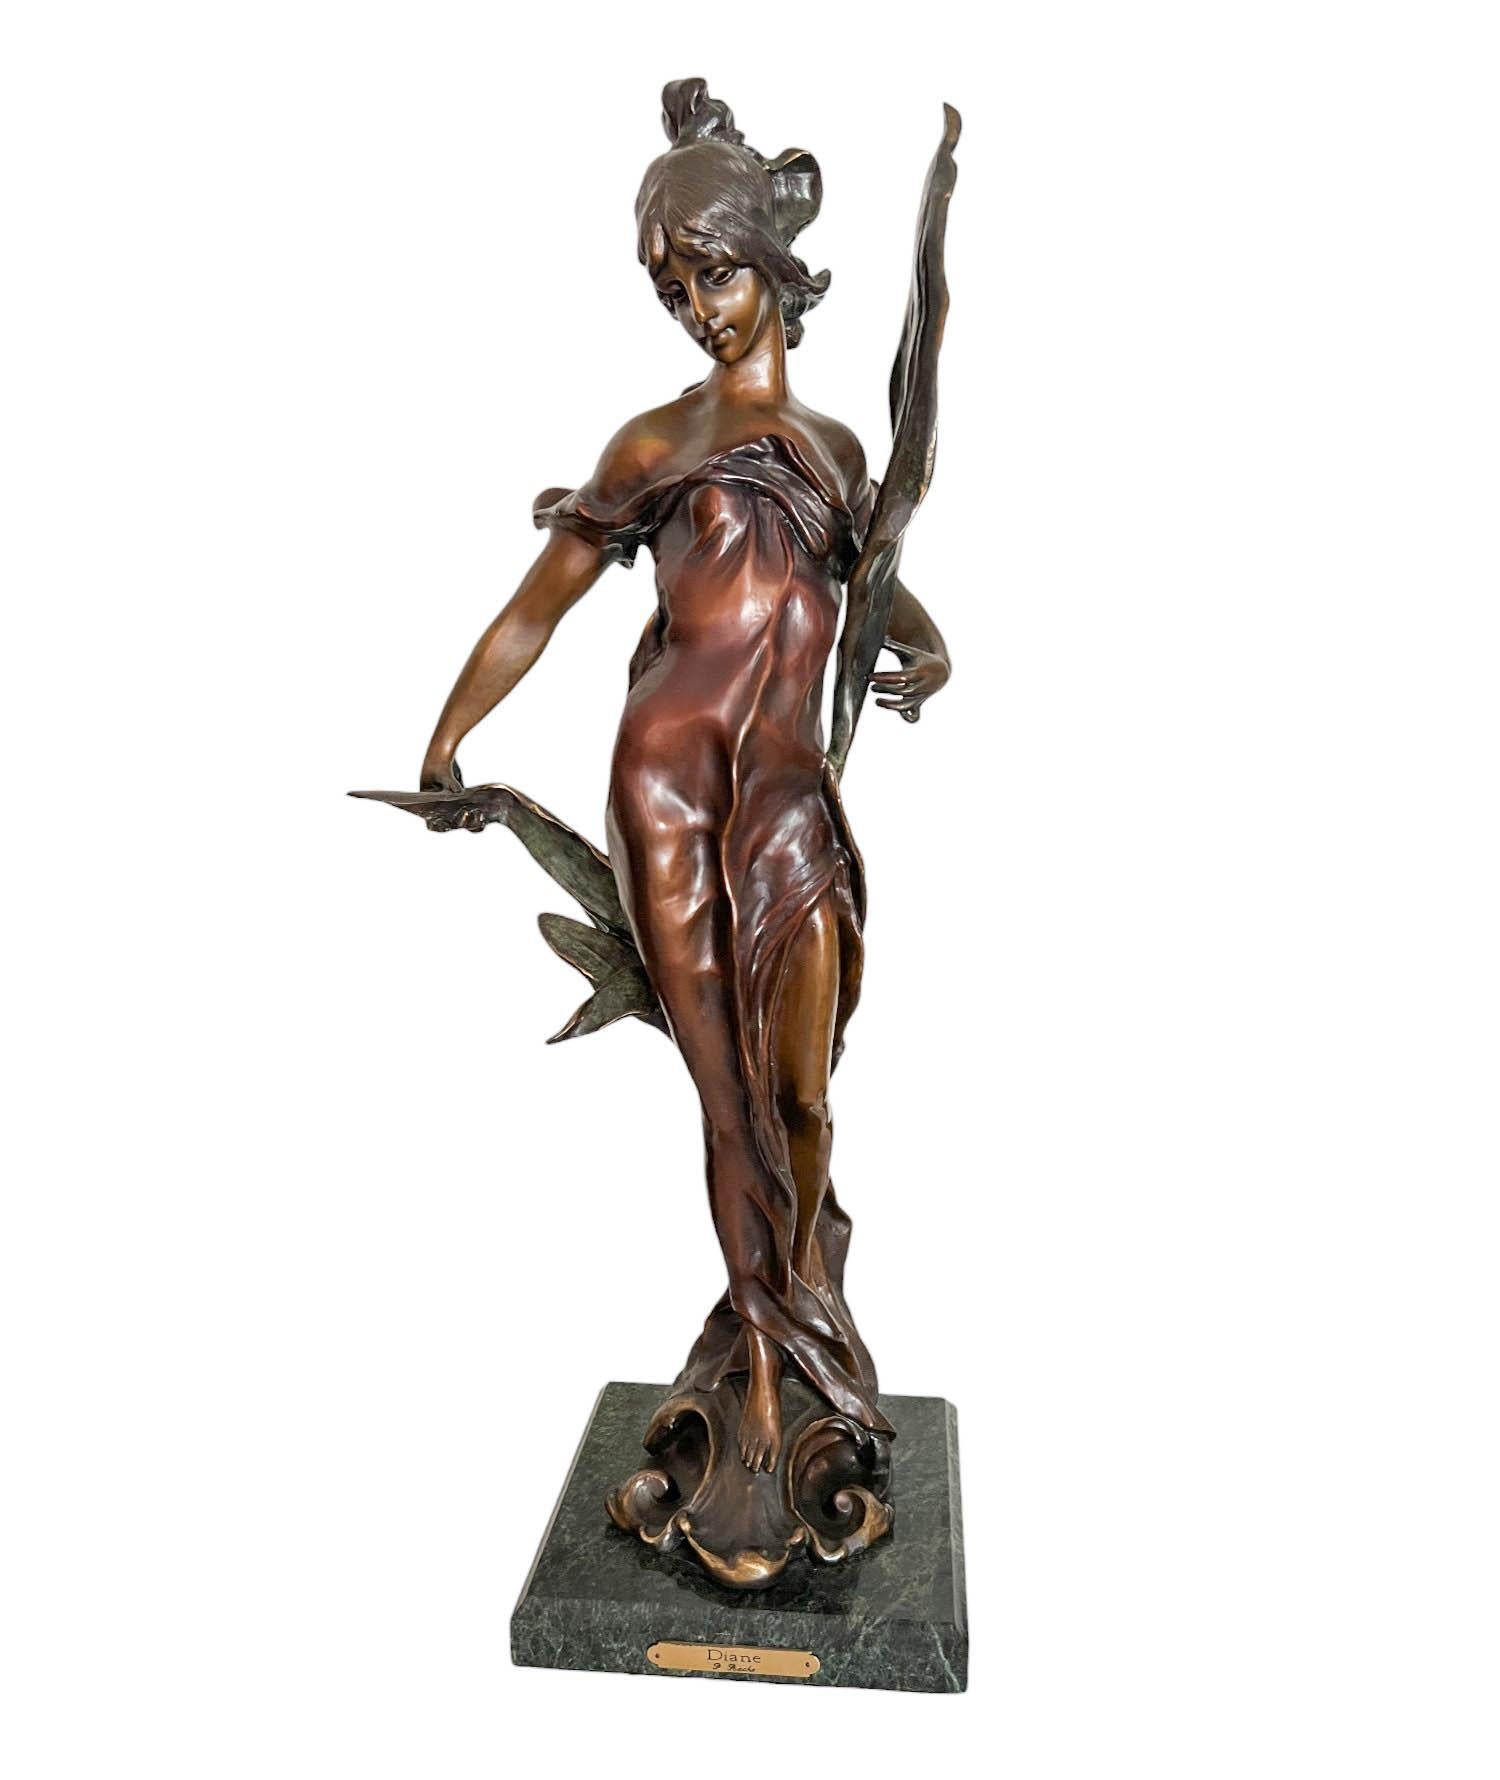 Bronzeguss der Göttin der Jagd, Diana, nach Pierre Roche (Frankreich 1955 - 1922). Die Skulptur steht auf einem quadratischen Sockel aus grünem Marmor.

Abmessungen:

Sockel: 8